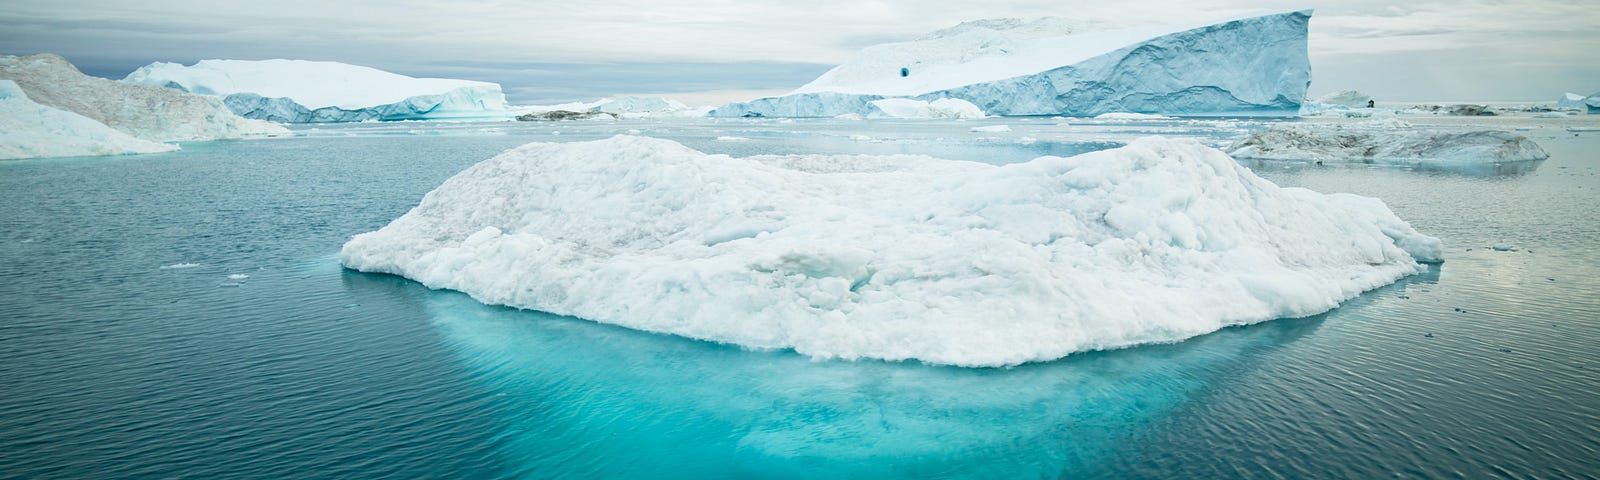 Arctic Icebergs in Ilulissat, Greenland